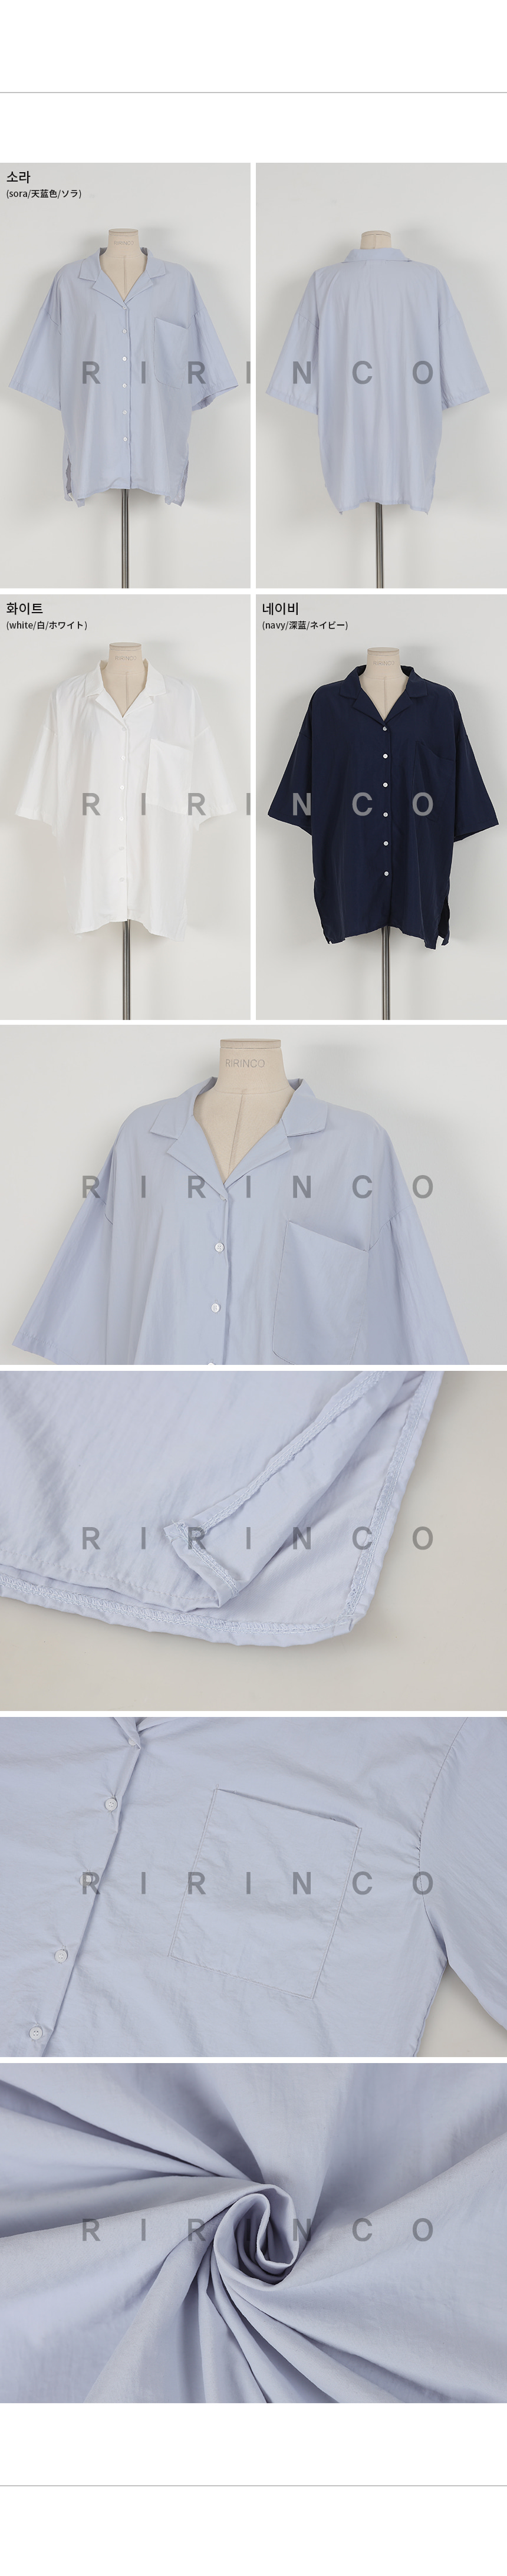 RIRINCO オープンカラールーズフィットシャツ